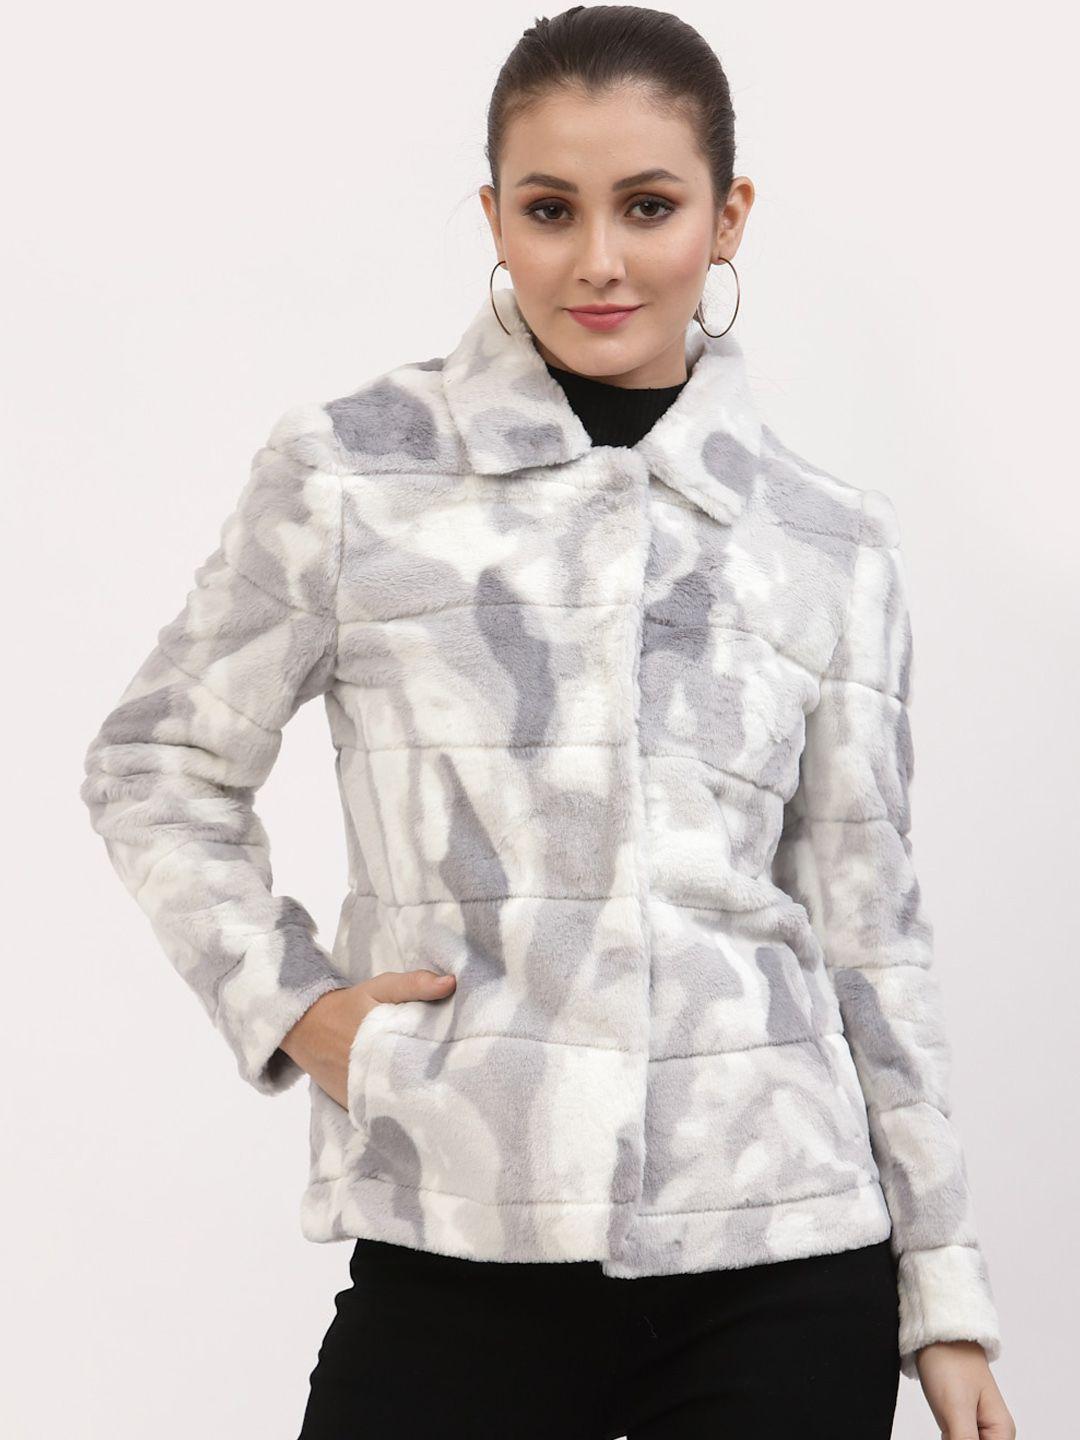 juelle women self-design overcoat